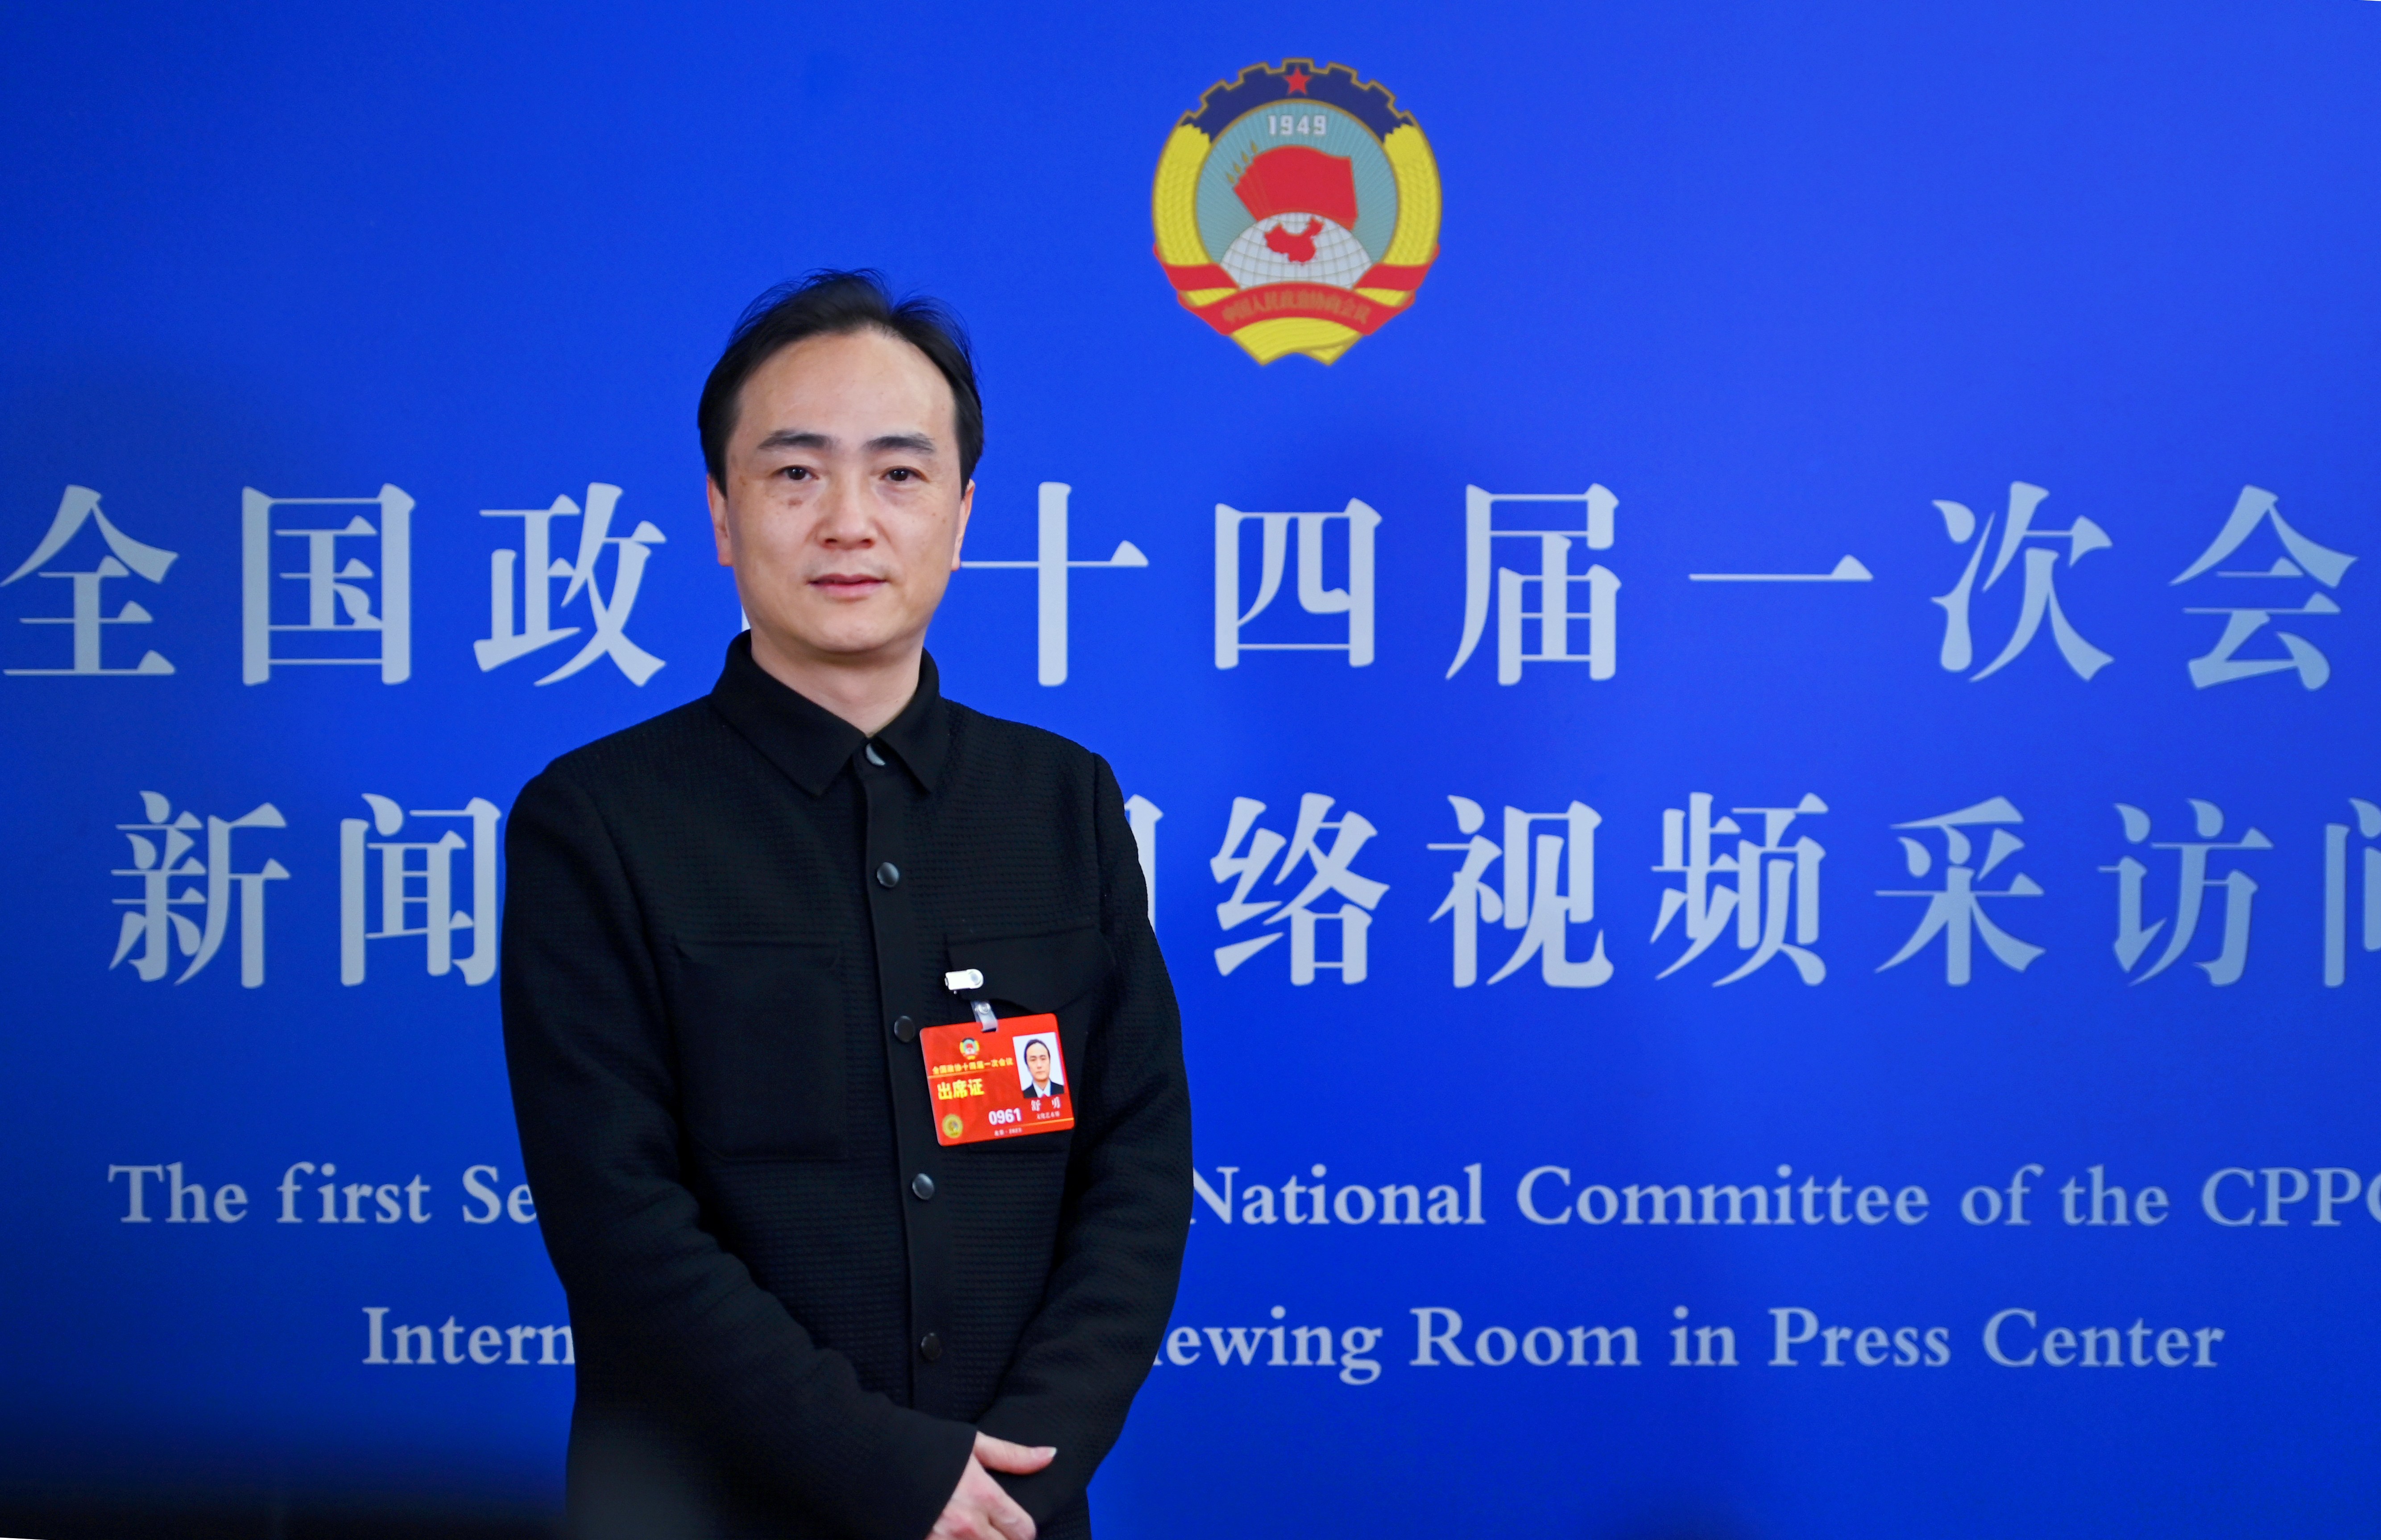 全国政协委员舒勇:我们需要文化符号来向世界传达中国价值观